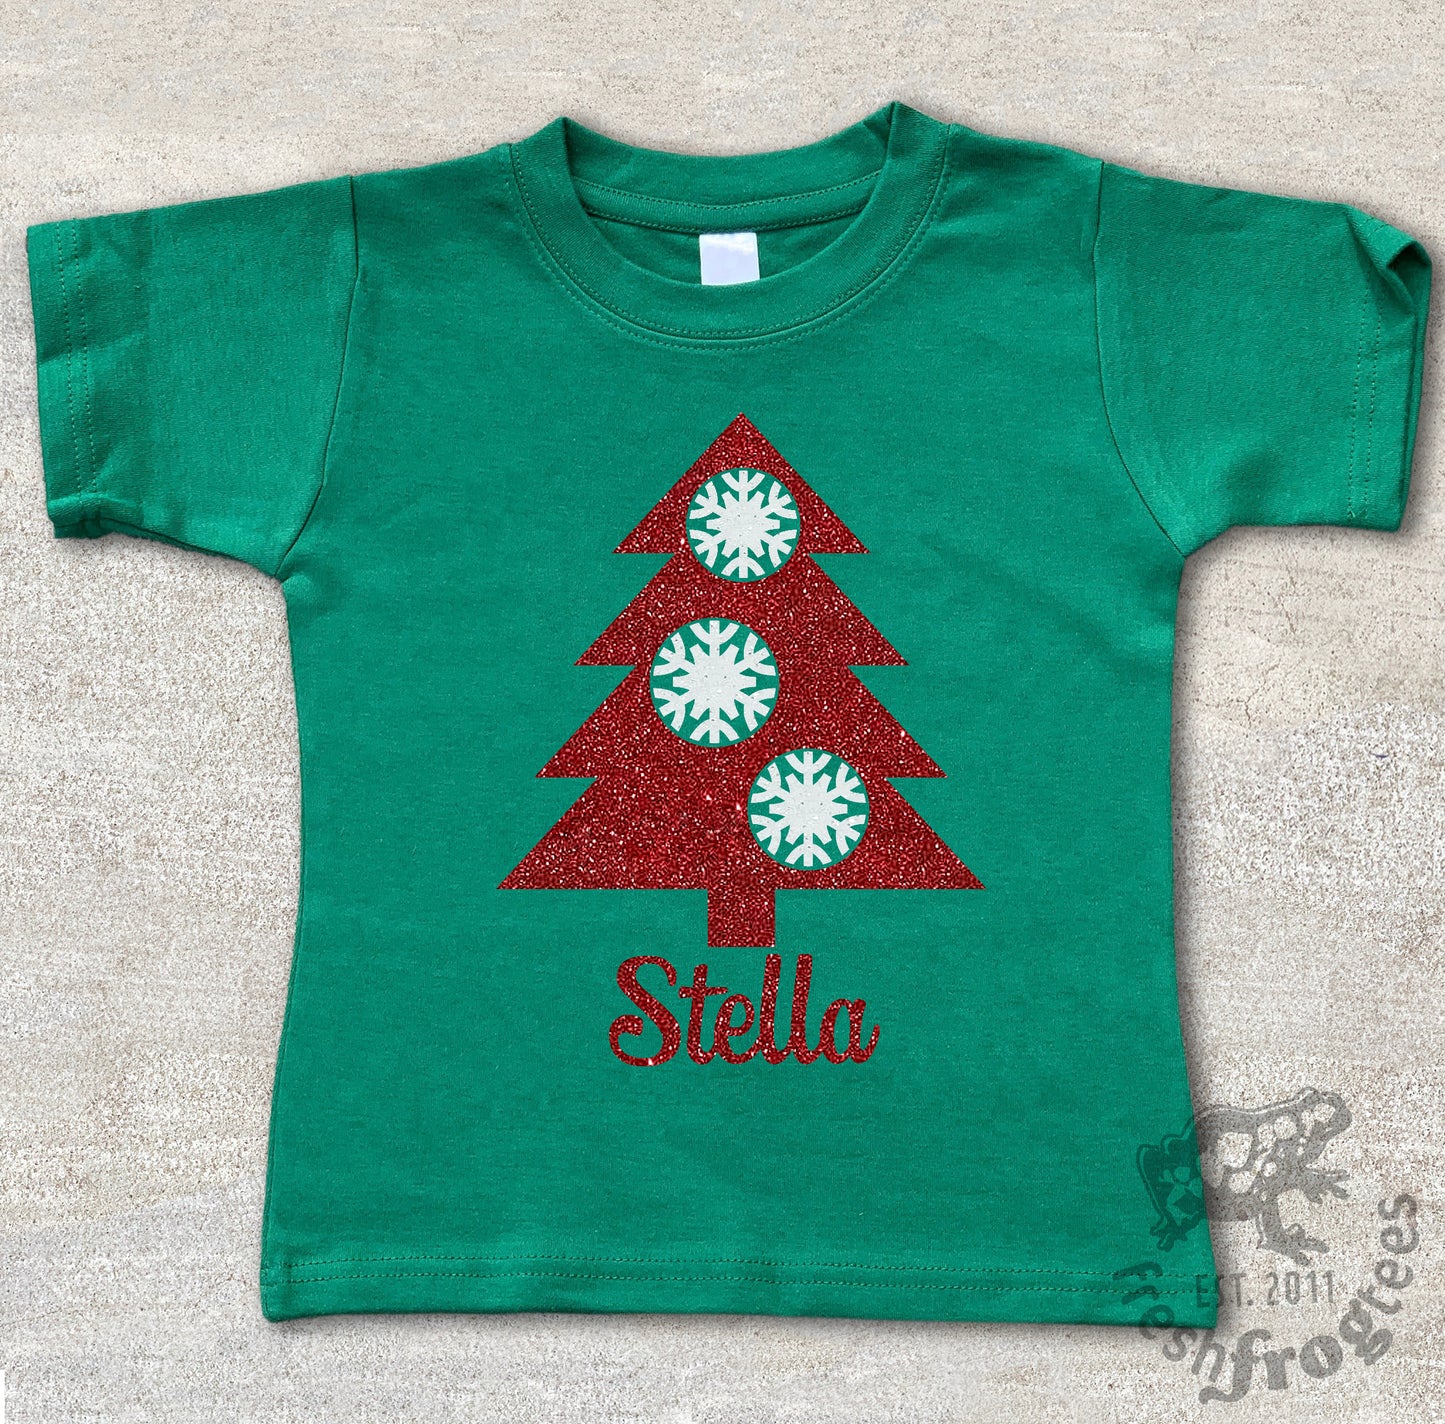 Personalized Christmas Tree Holiday tshirt